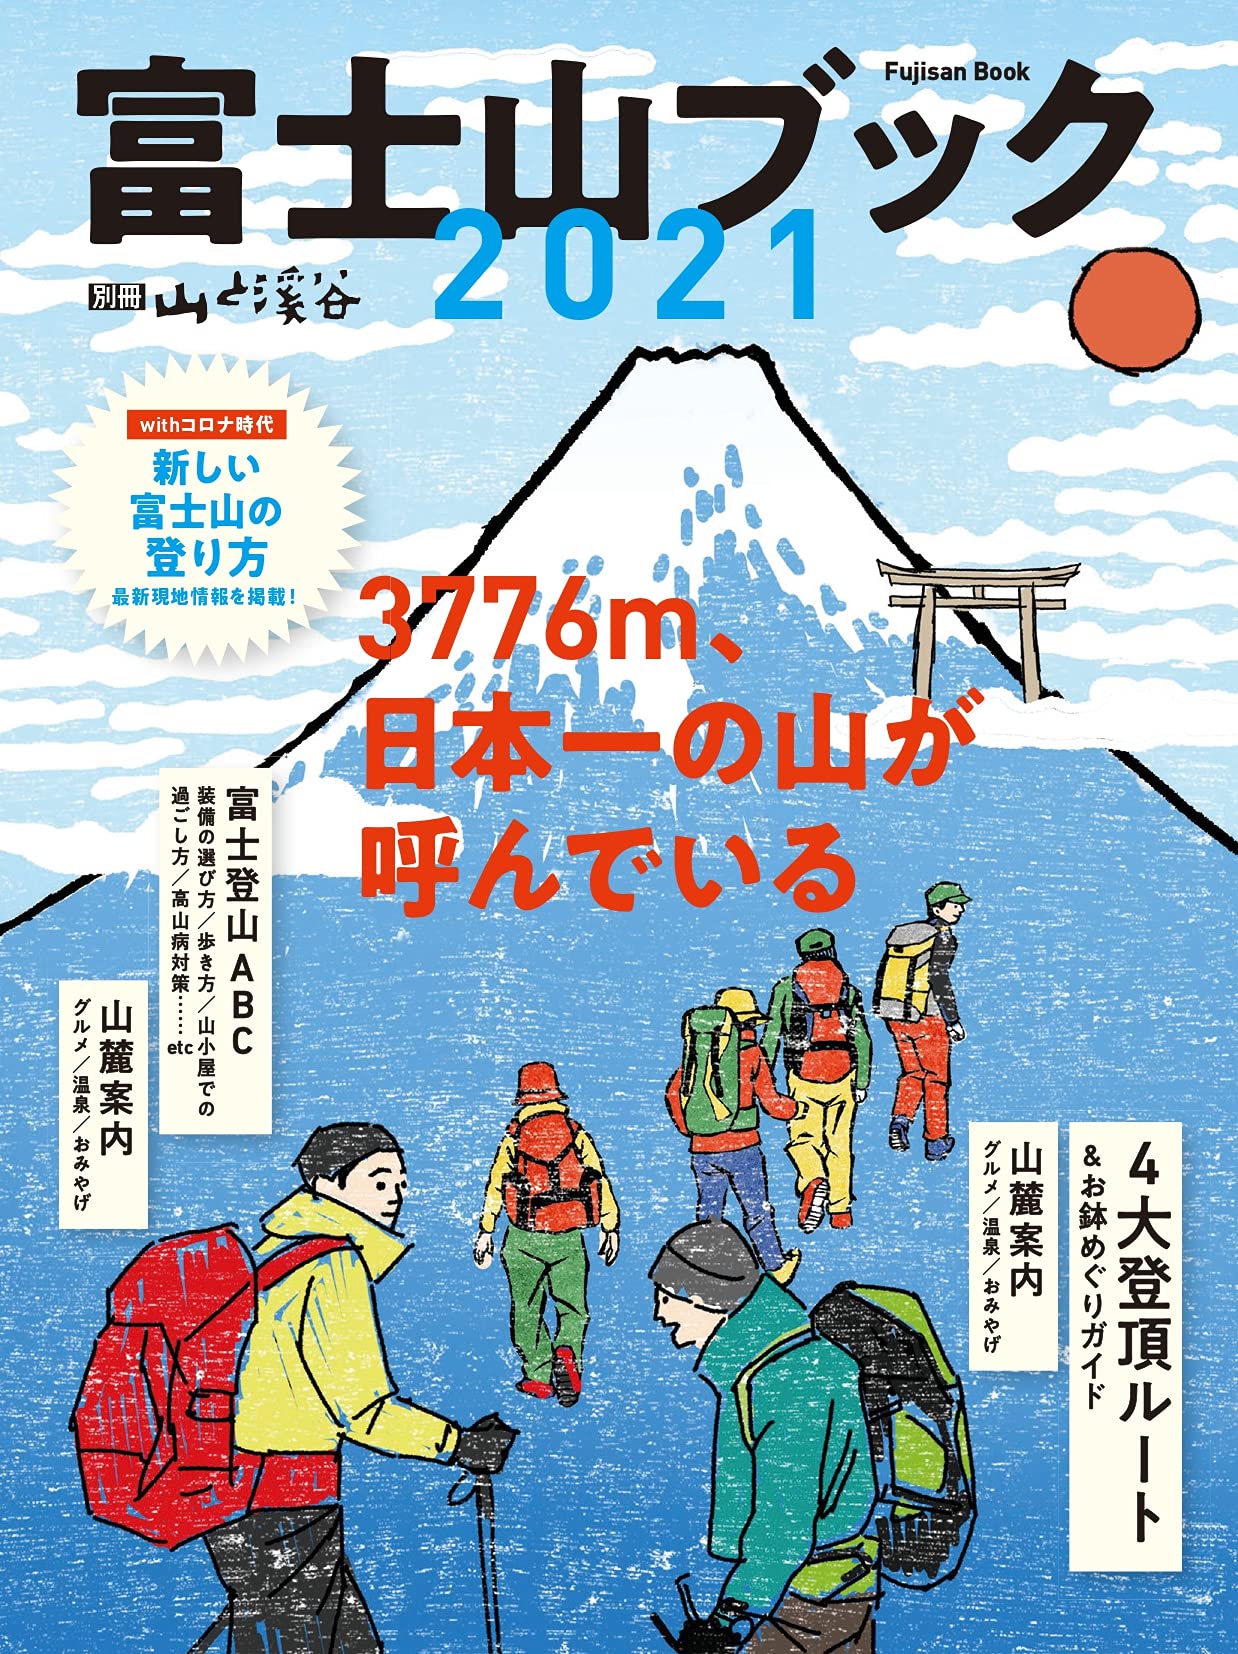 富士山ブック 2021「3776m、日本一の山が呼んでいる」 (別冊山と溪谷)